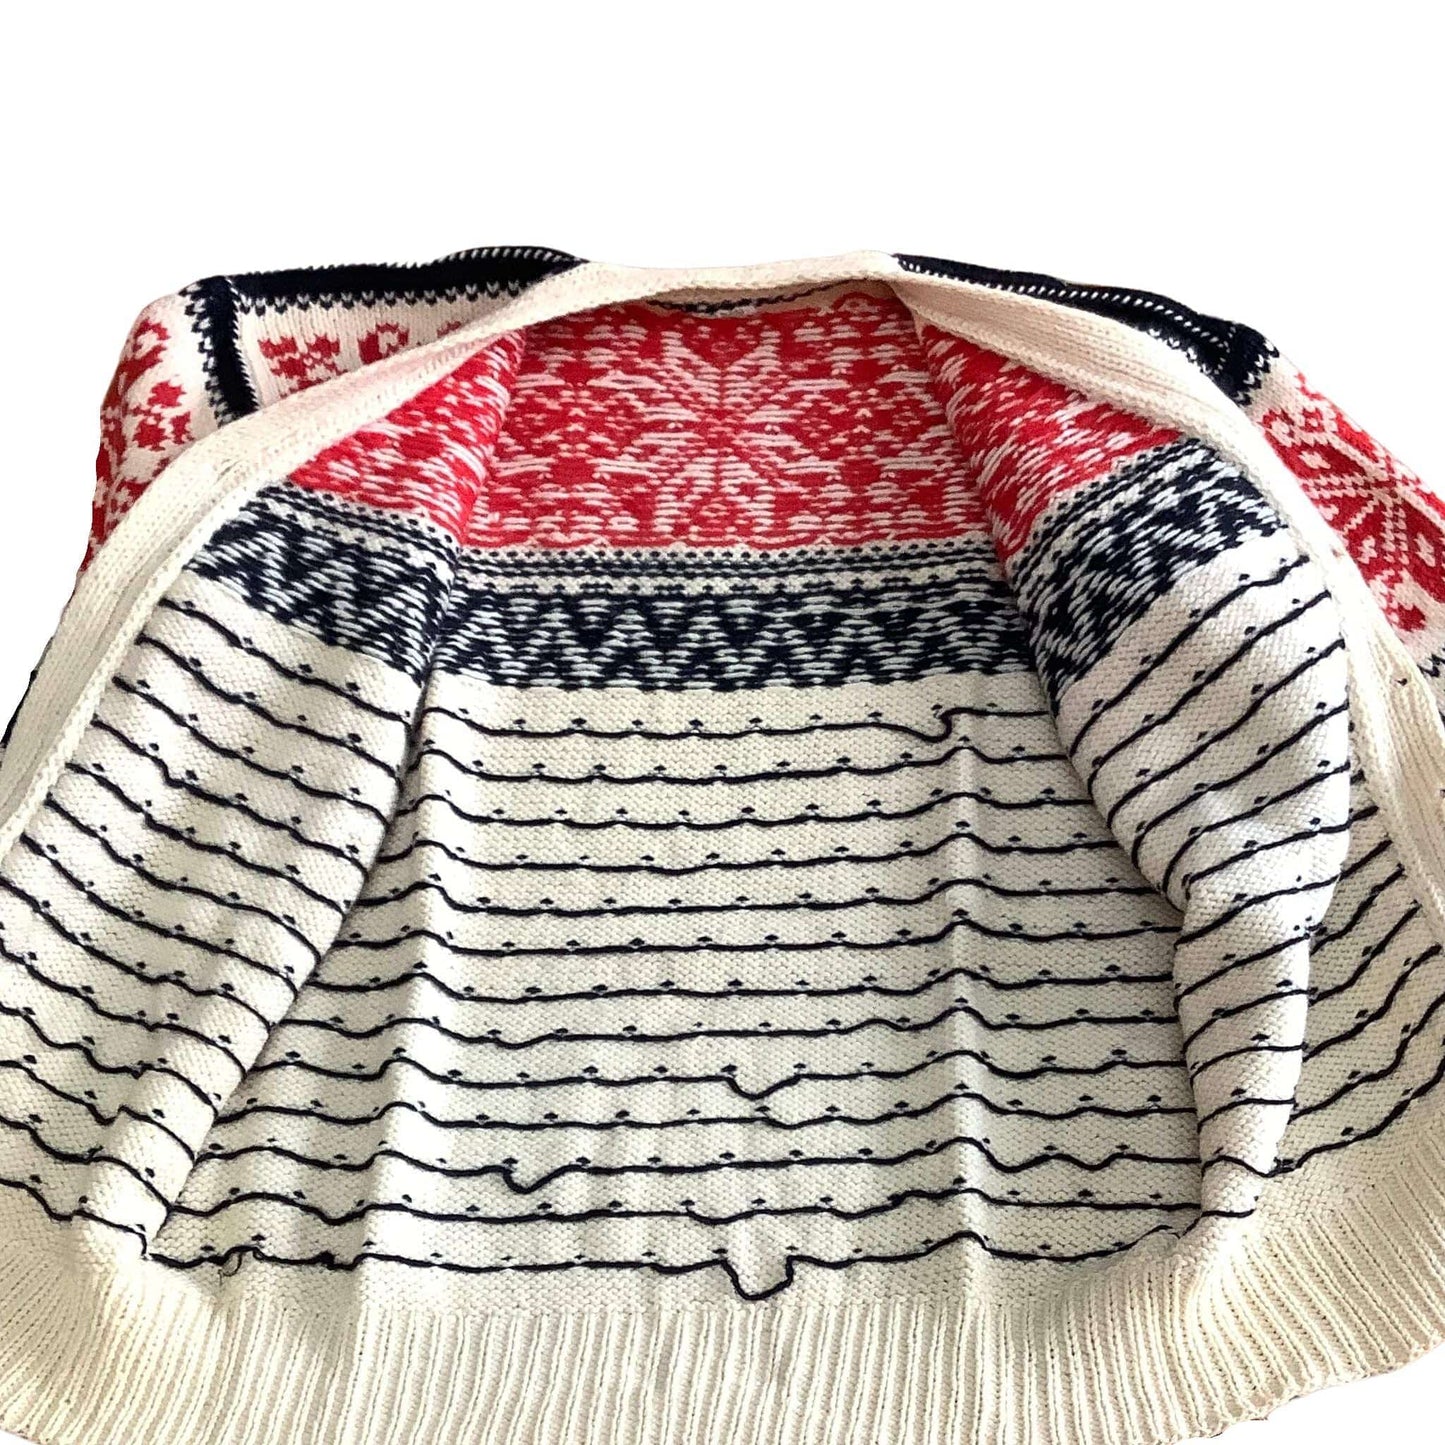 Fair Isle Sweater Small / Multi / Vintage 1950s